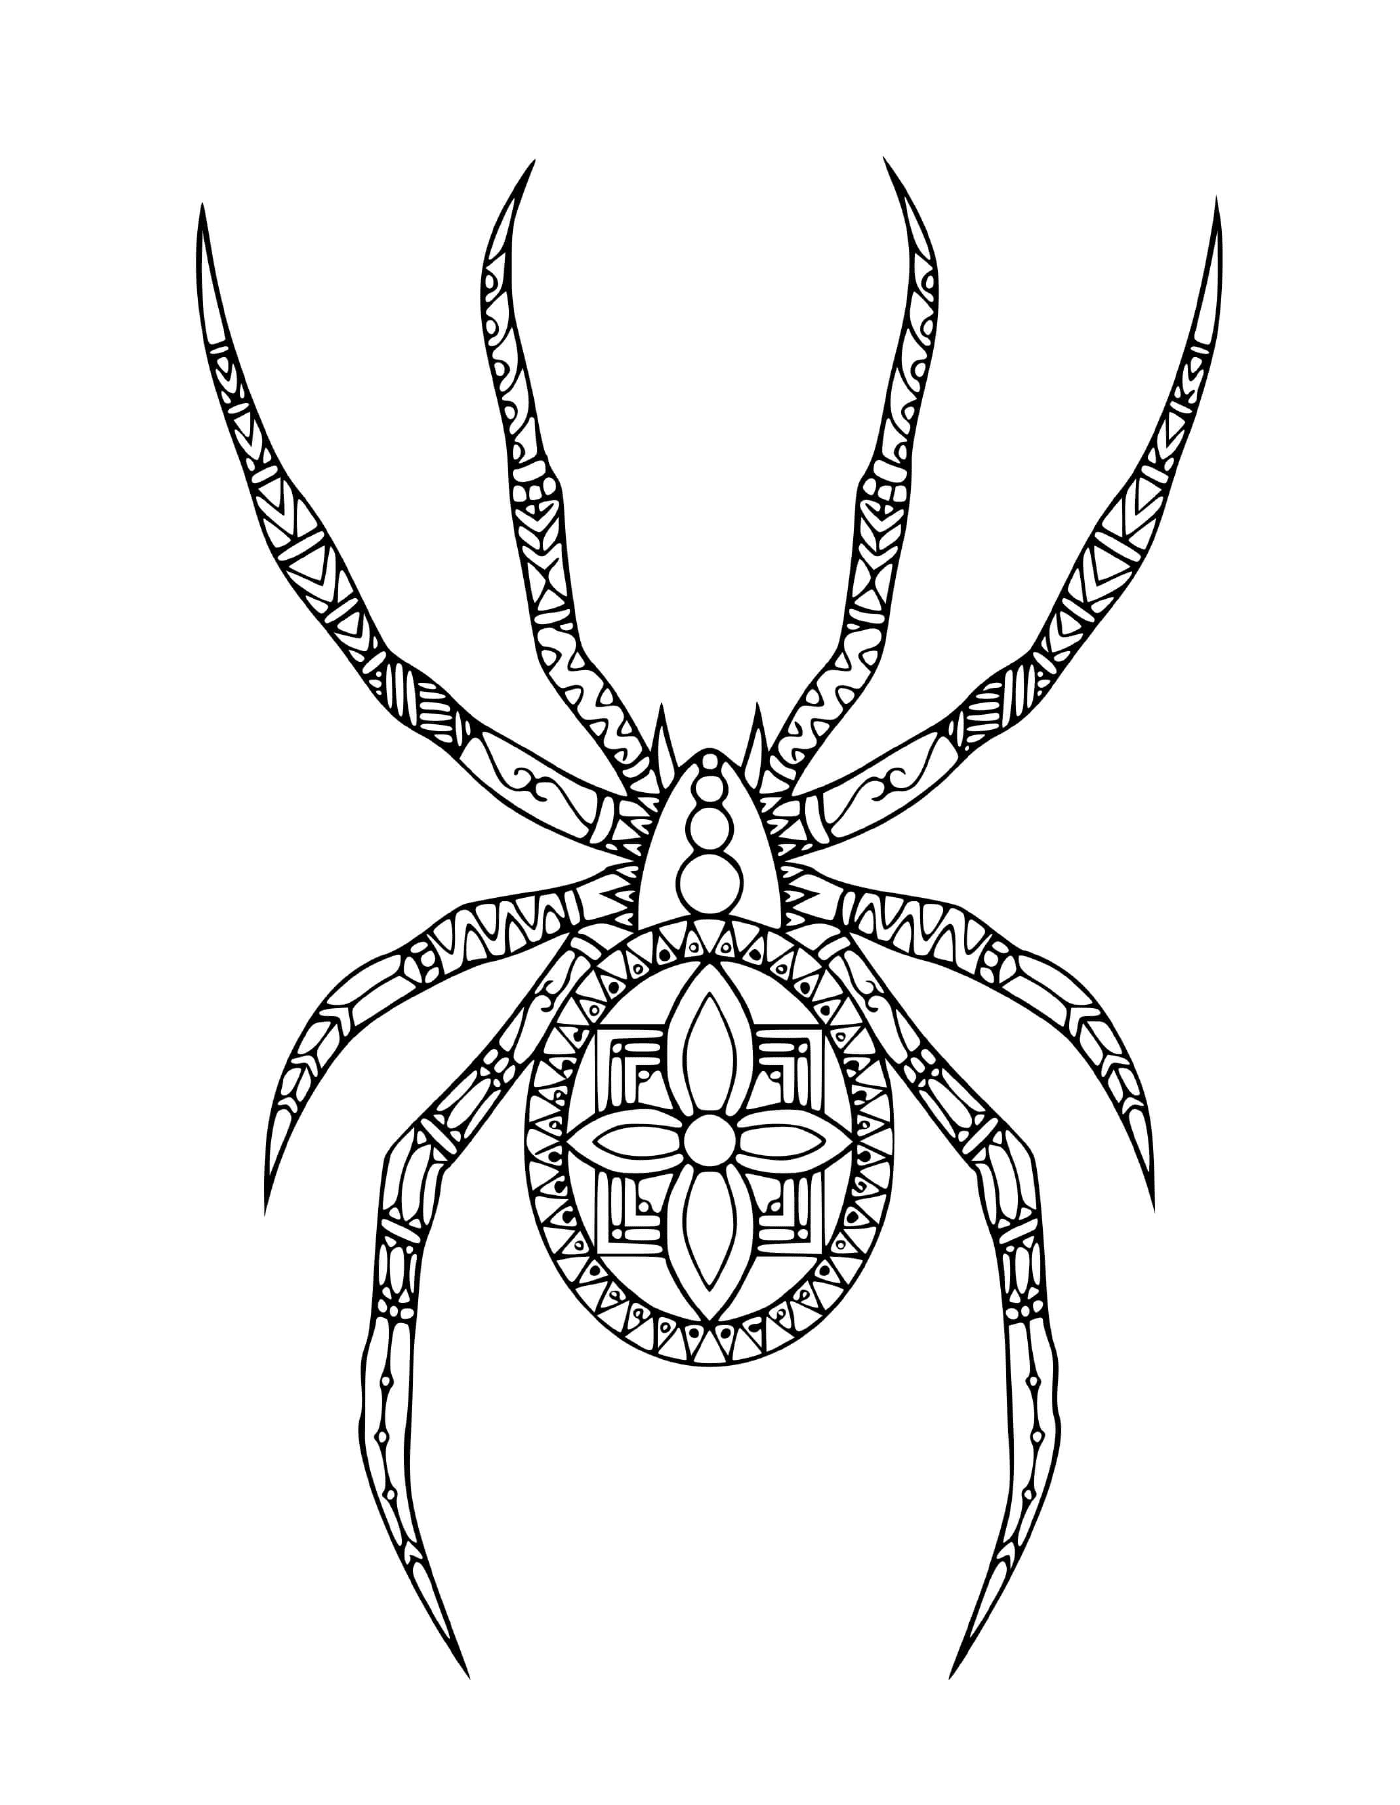   Une araignée dans un style doodle 